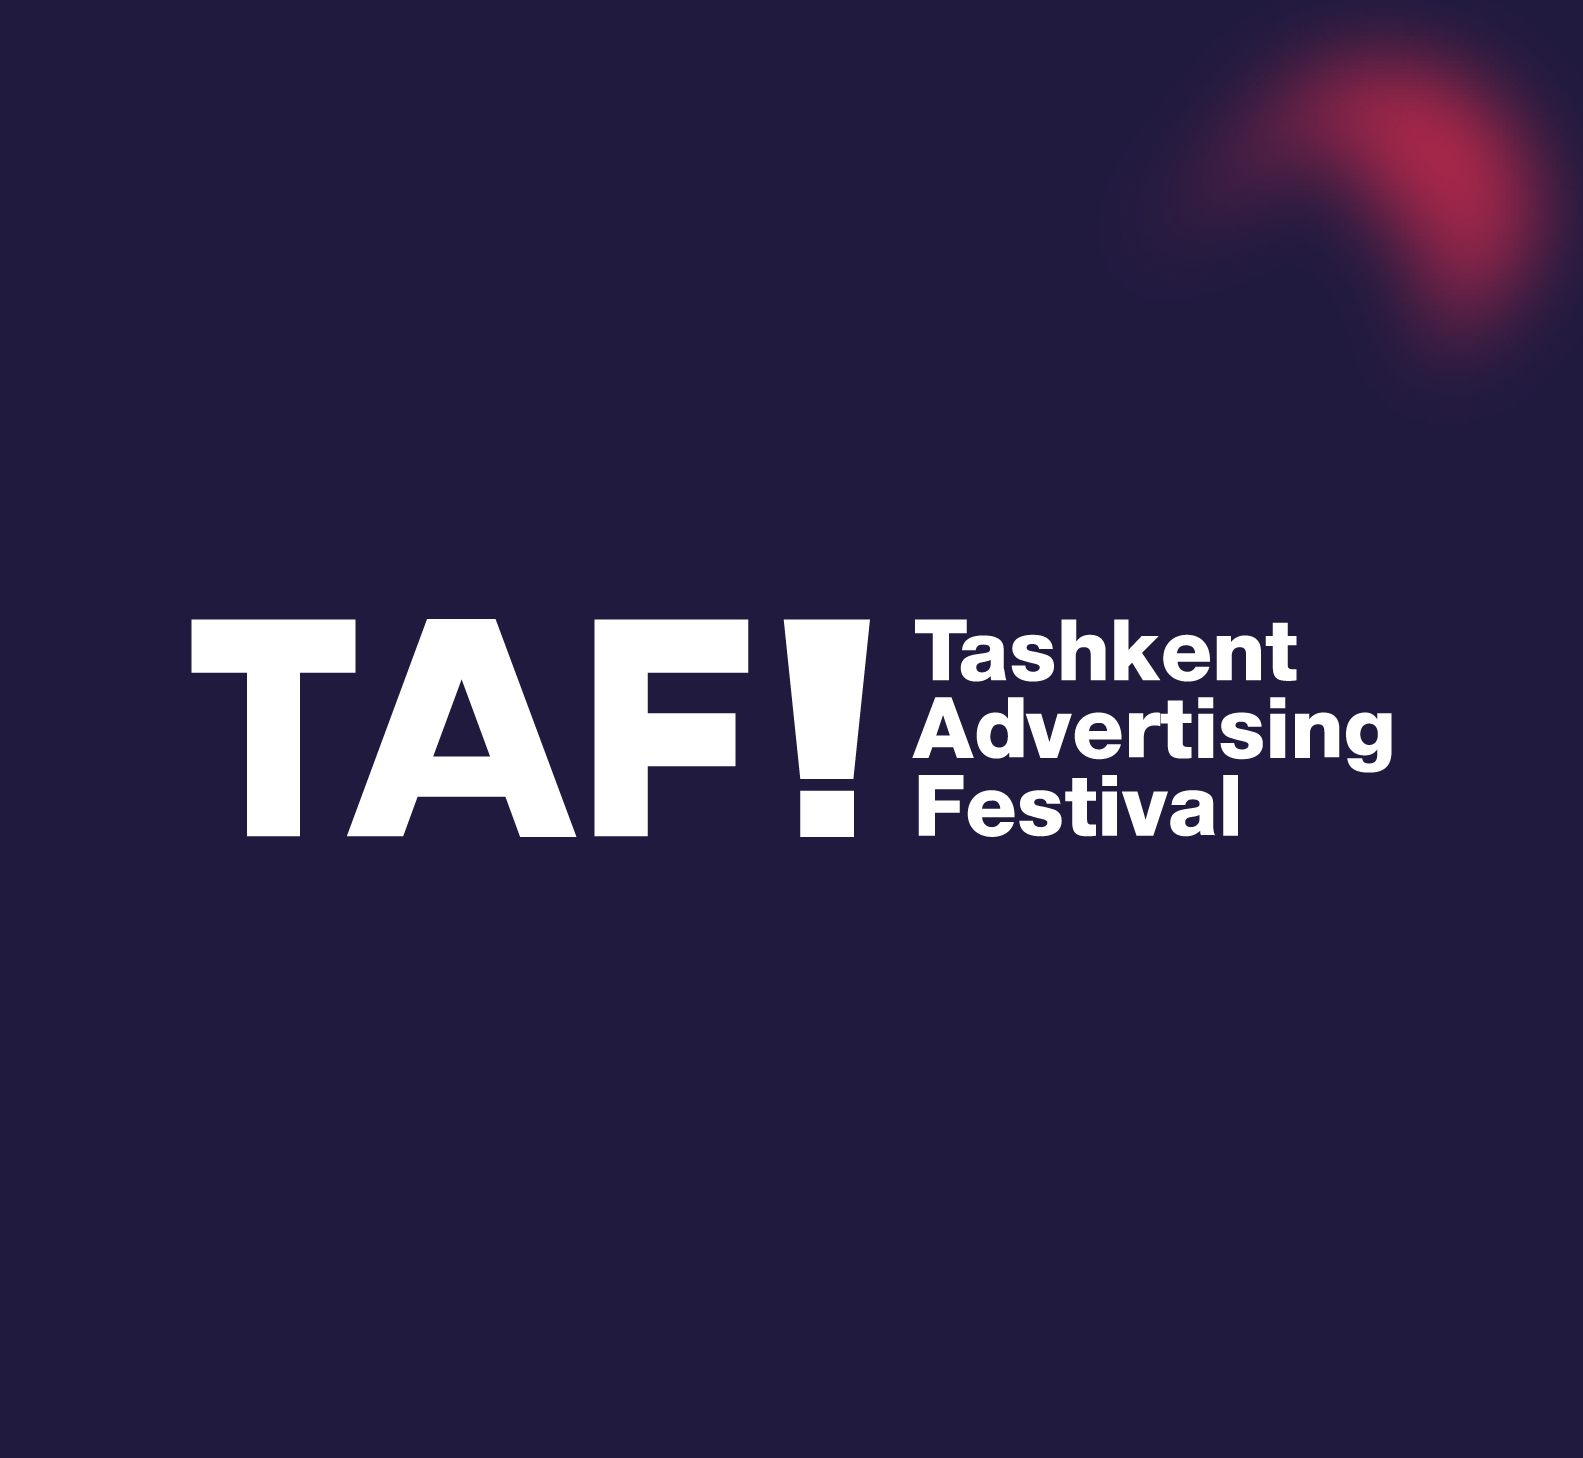 Tashkent Advertising Festival